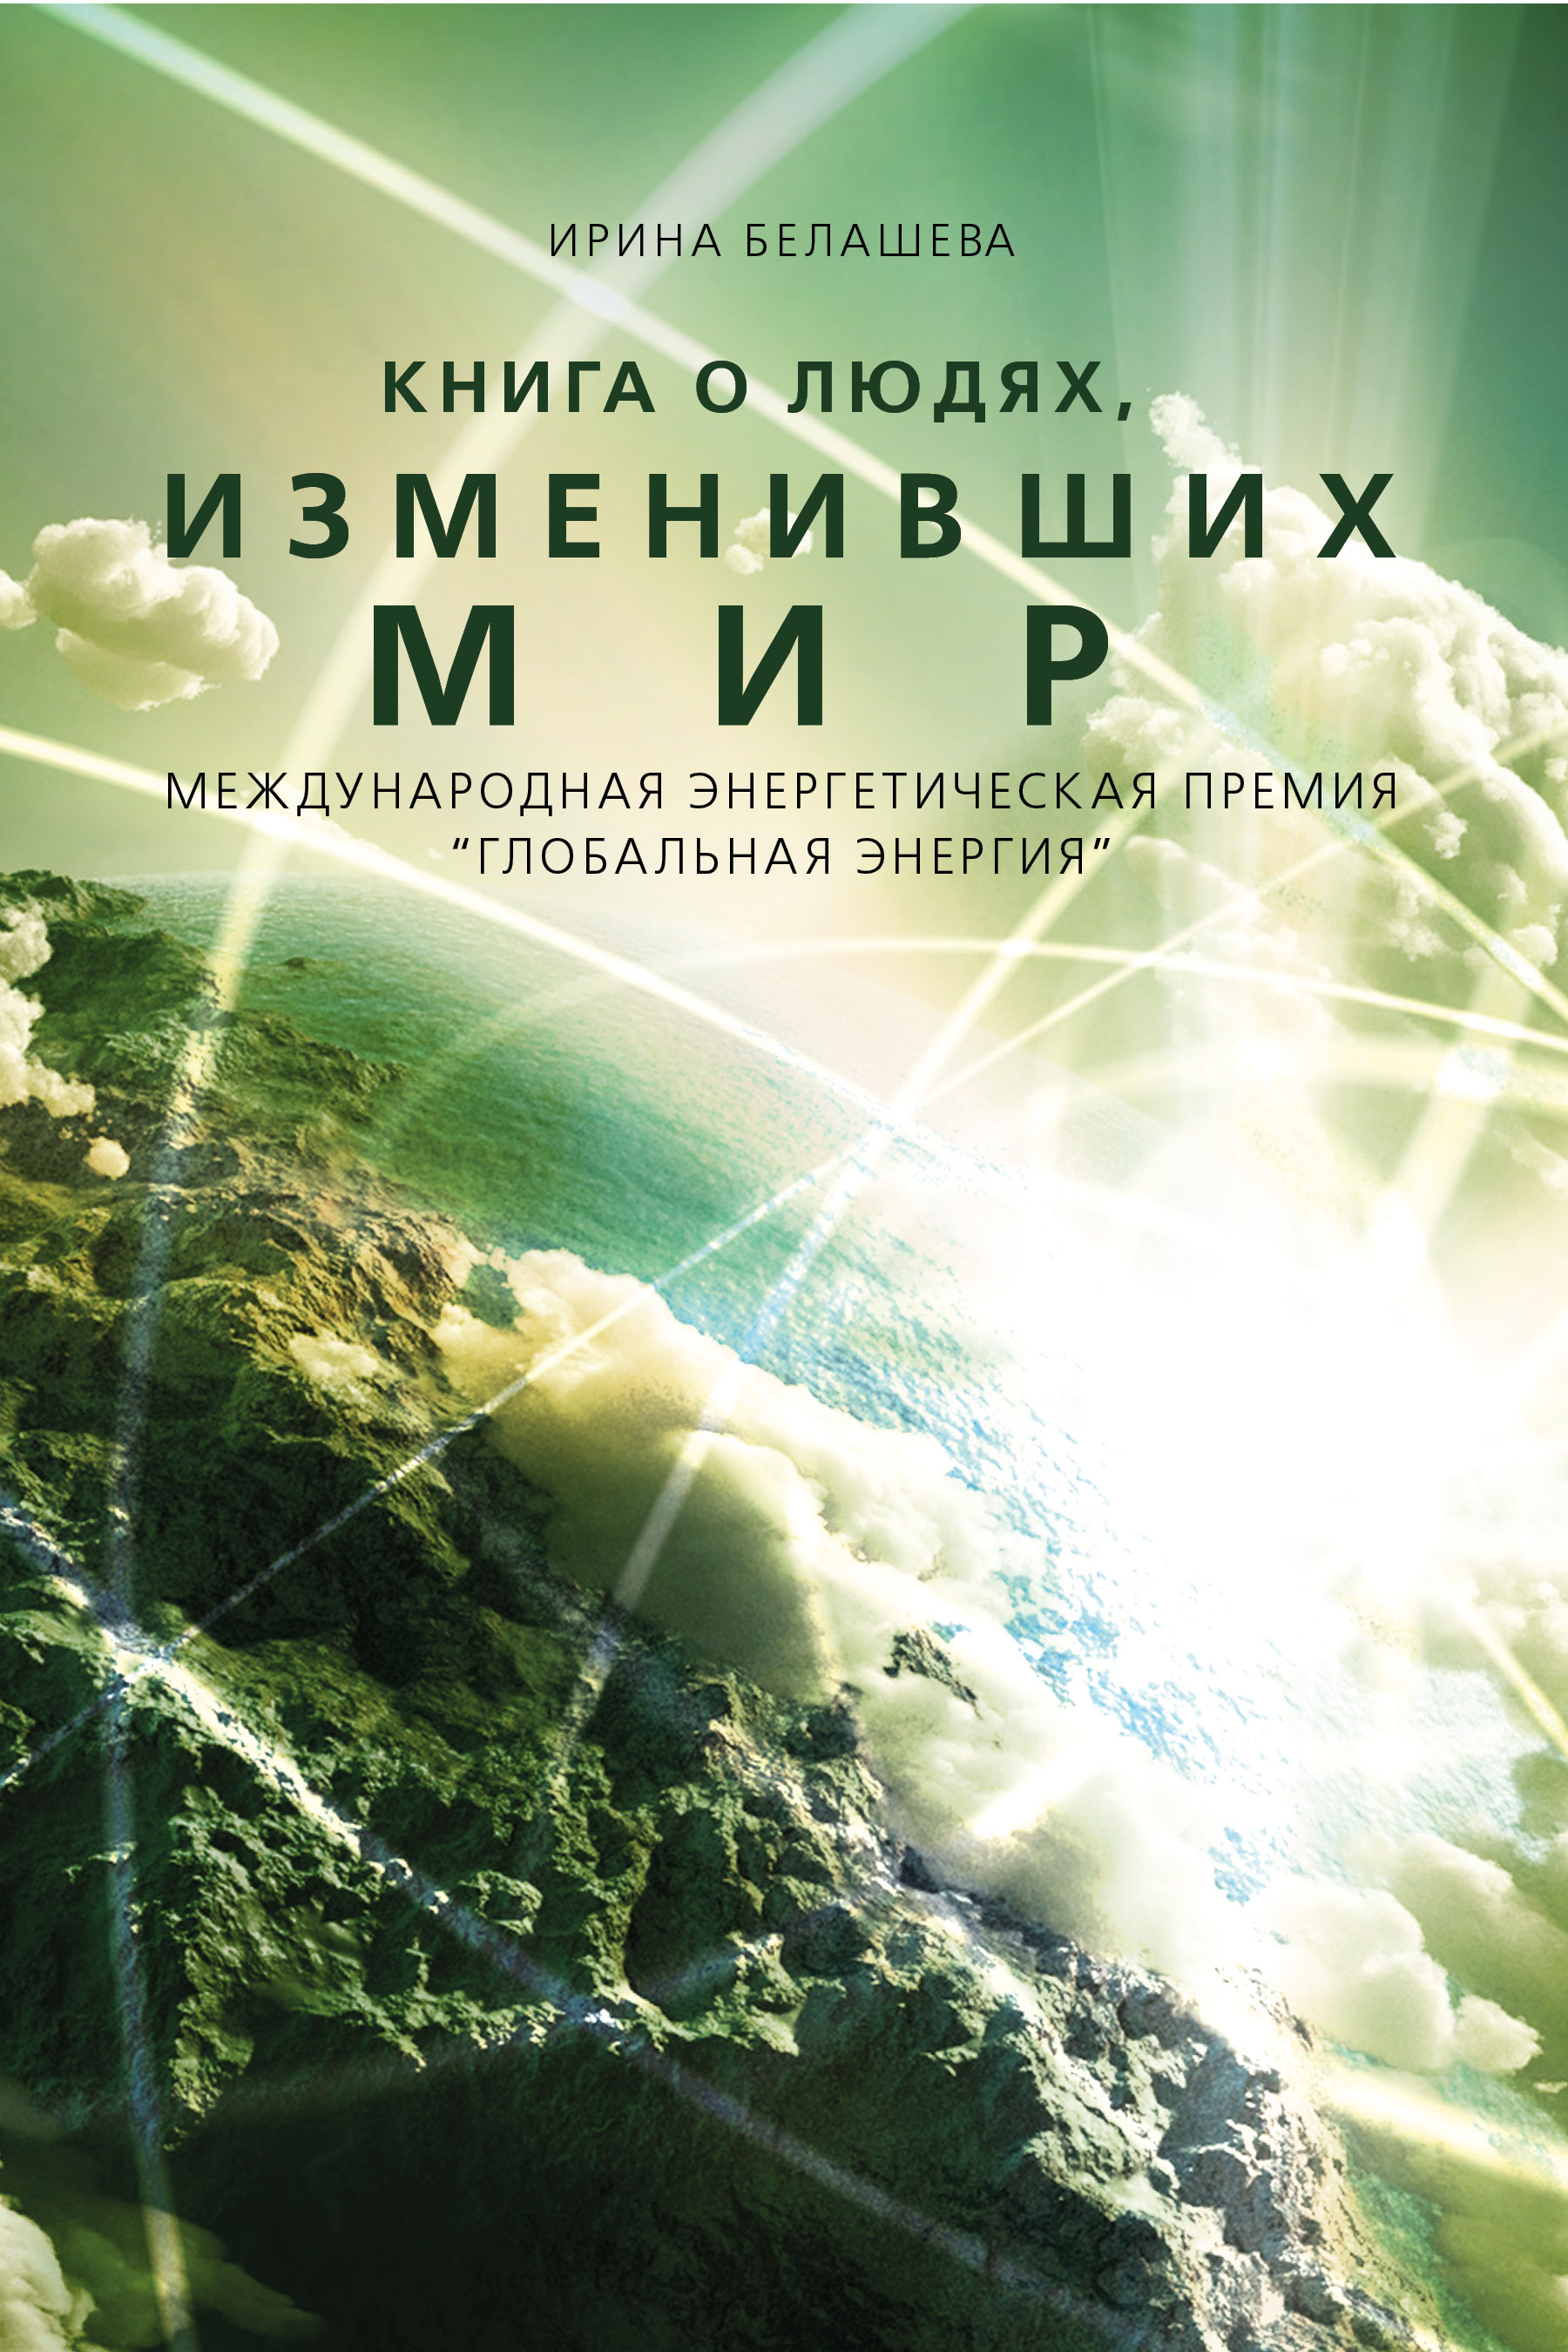 "Книга о людях, изменивших мир" - обложка